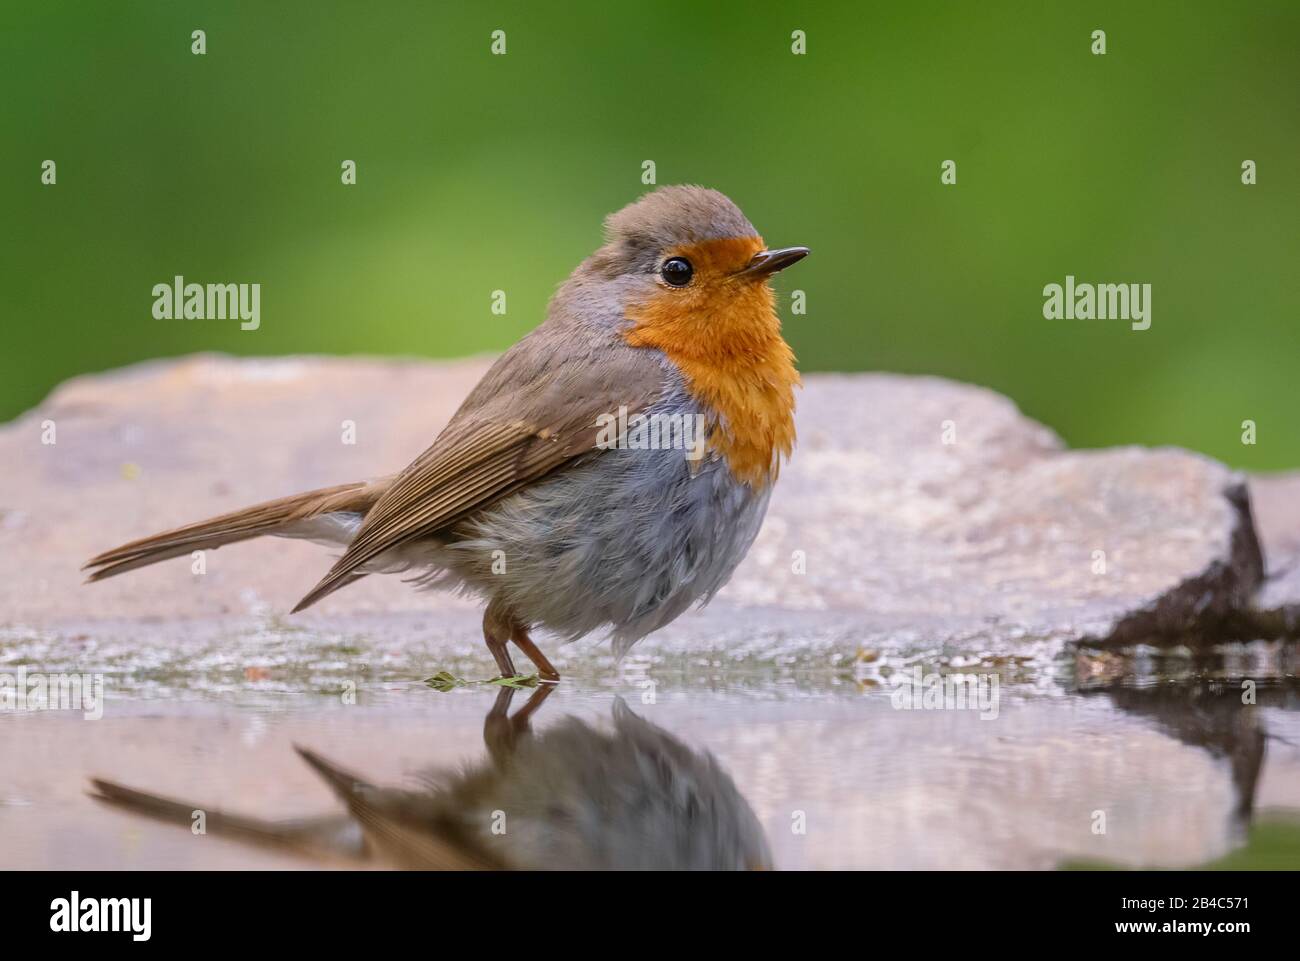 Européen Robin - Érithacus rubecula, magnifique oiseau de perchage de la brise rouge des jardins et des bois européens, Hortobagy, Hongrie. Banque D'Images